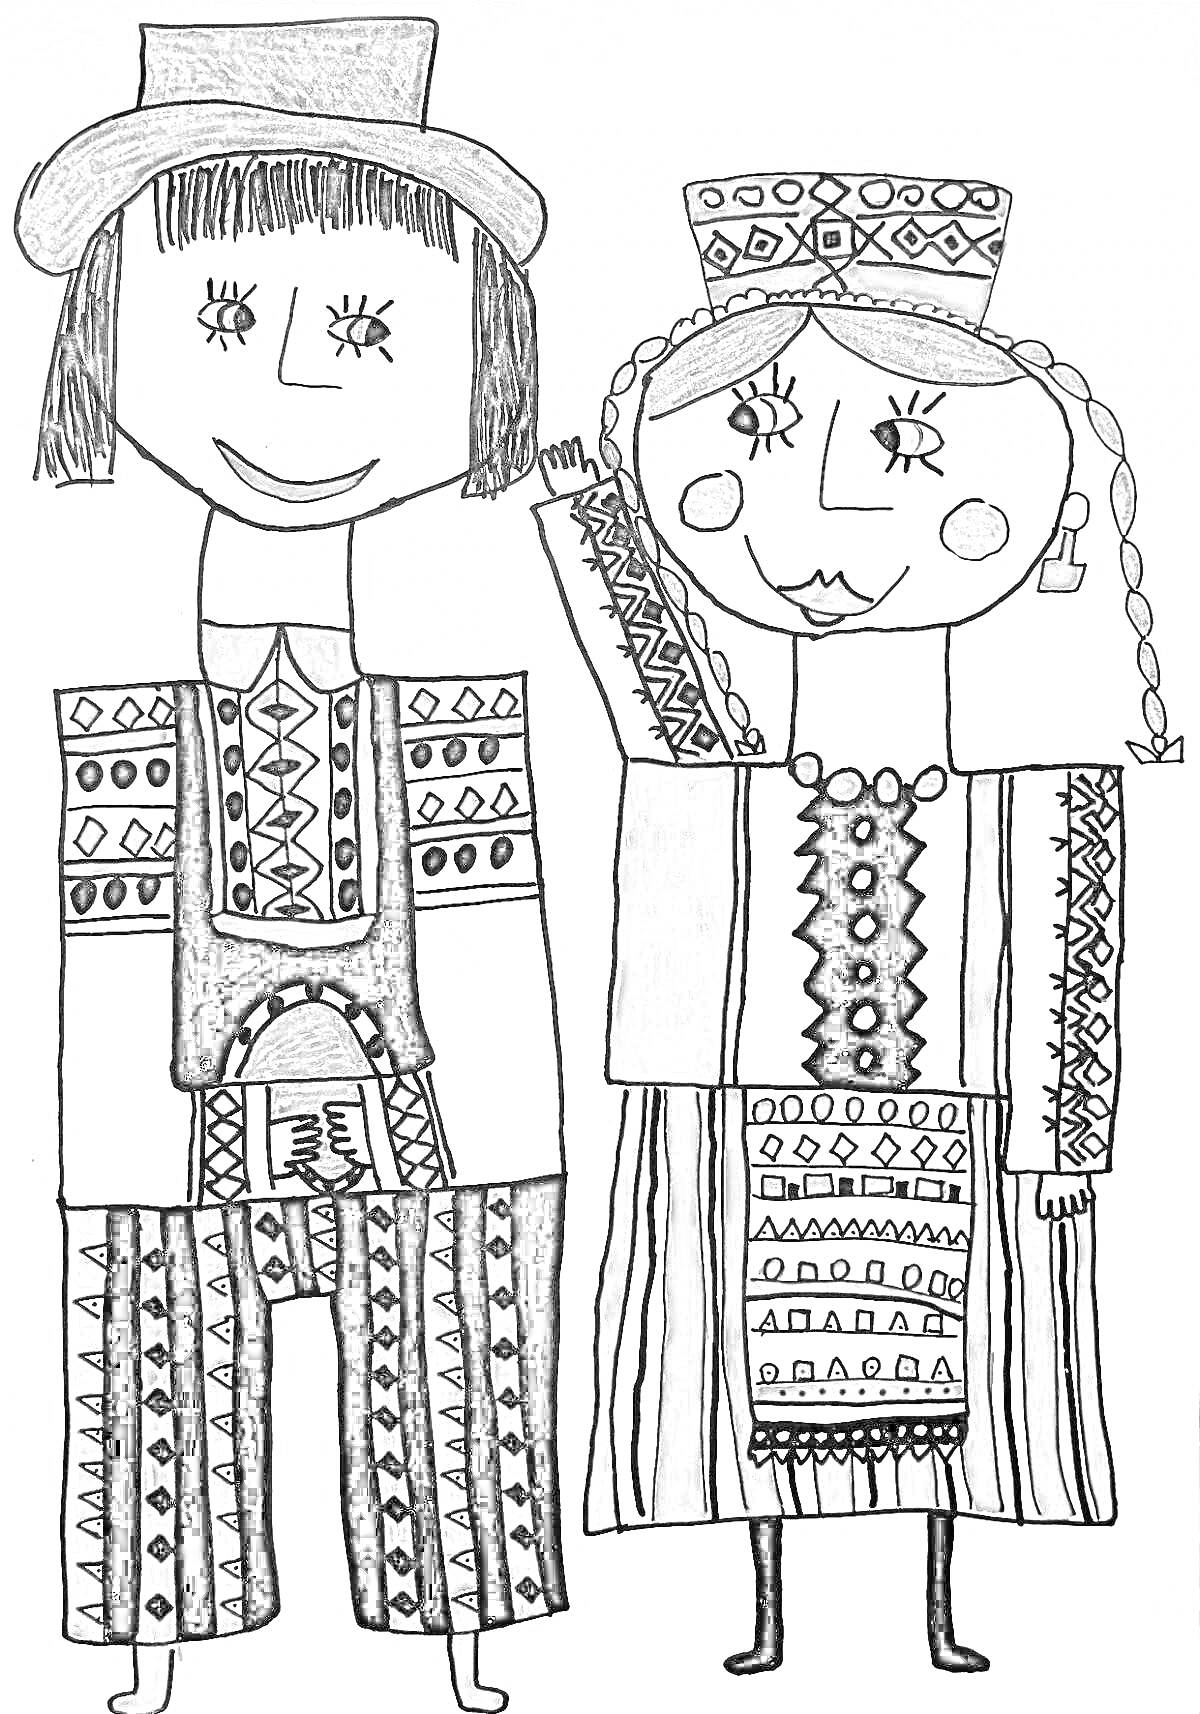 Раскраска Белорусский национальный костюм для детей - мальчик в шляпе и шароварах, девочка в венке и длинной юбке